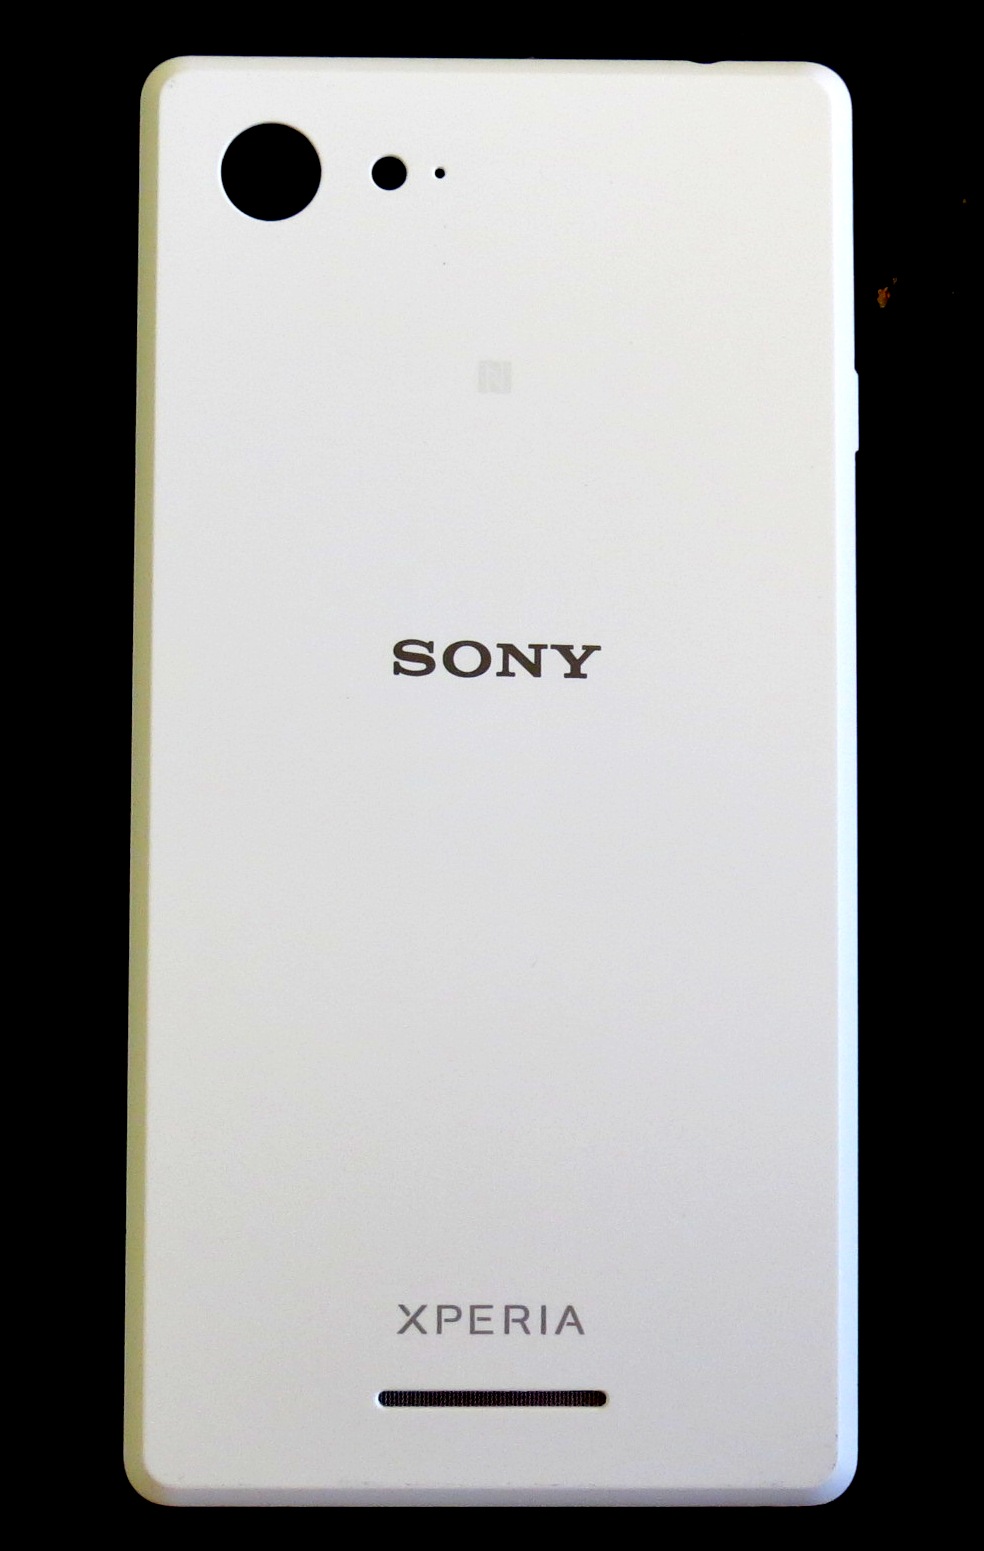 Zadní kryt baterie na telefon Sony Xperia E2303 M4 Aqua bílý